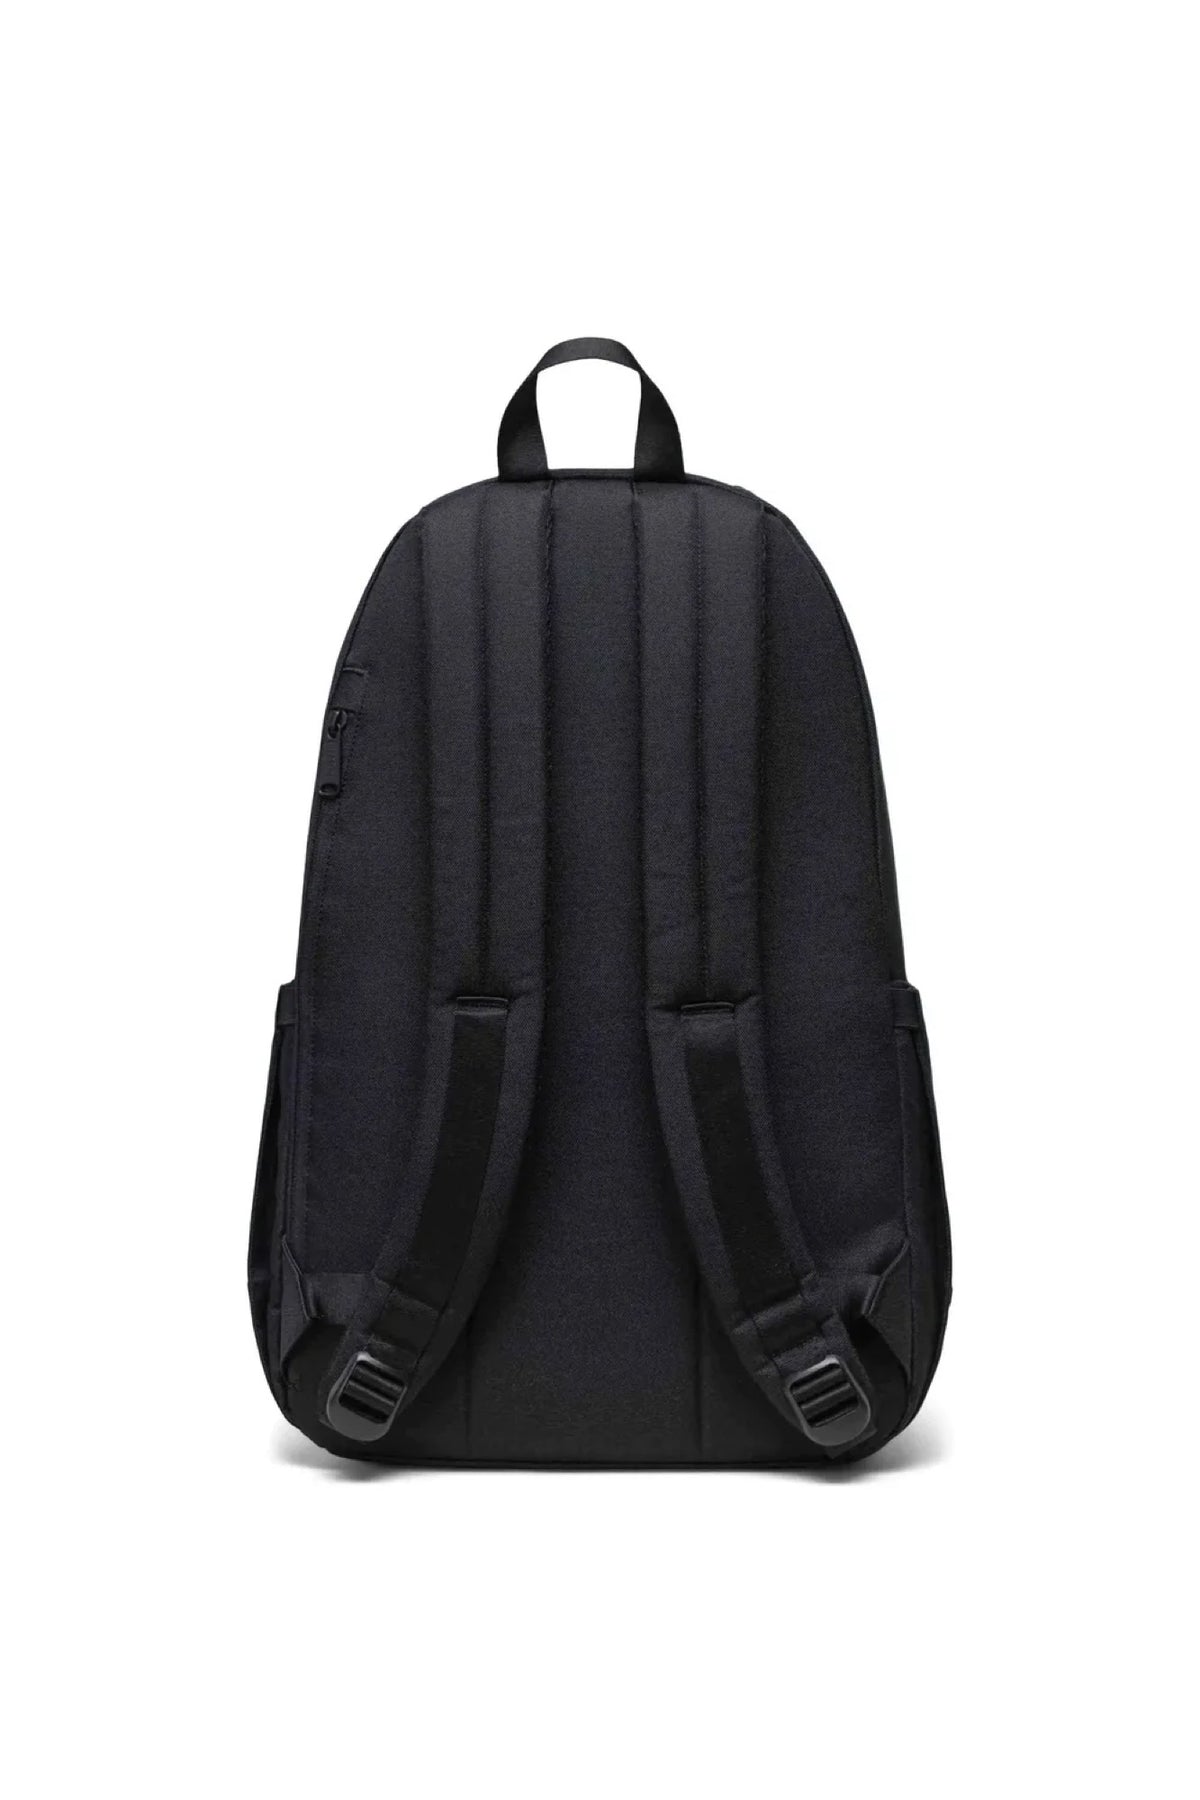 Herschel Seymour Backpack Black